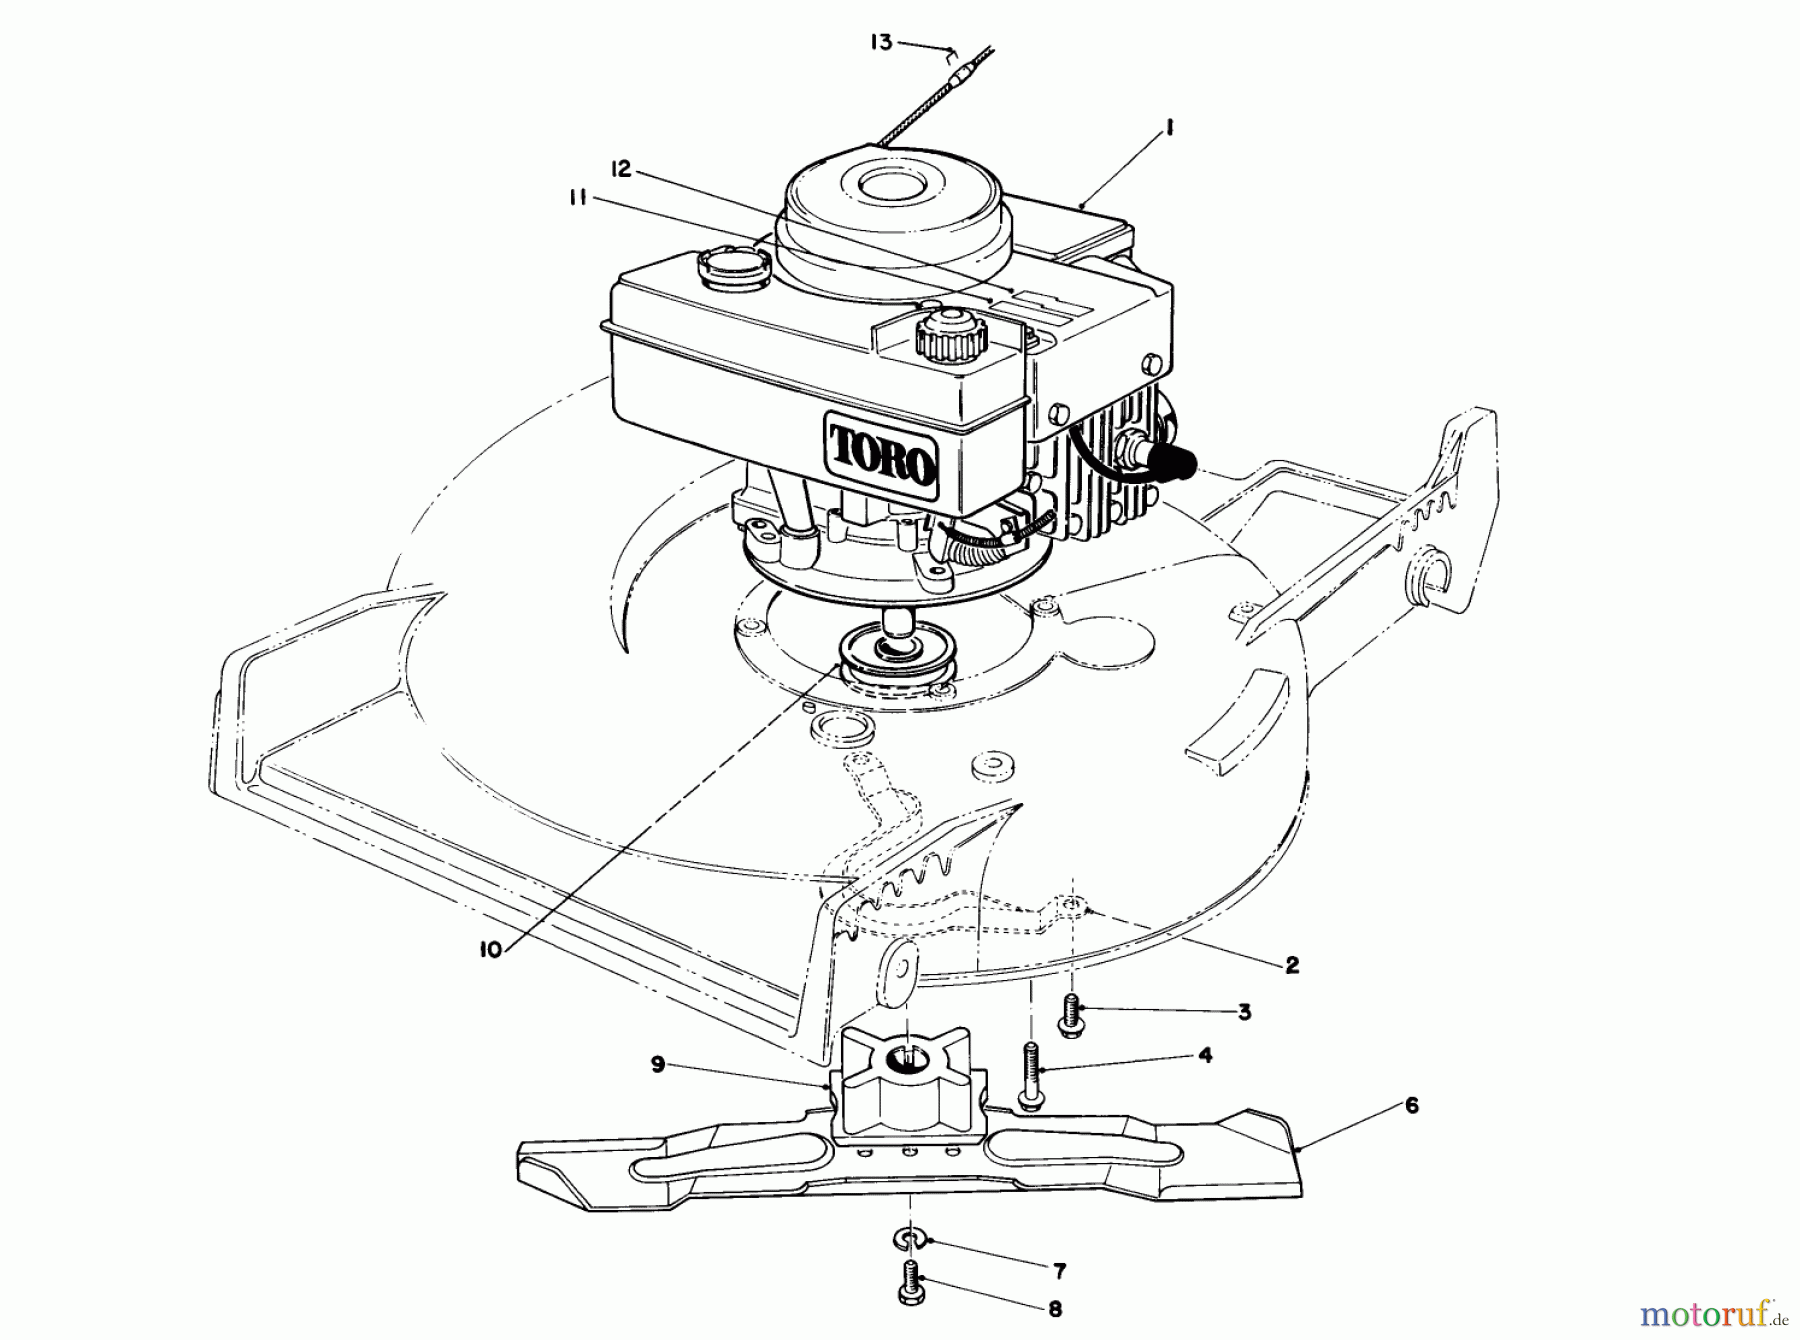  Toro Neu Mowers, Walk-Behind Seite 1 20631 - Toro Lawnmower, 1988 (8000001-8999999) ENGINE ASSEMBLY